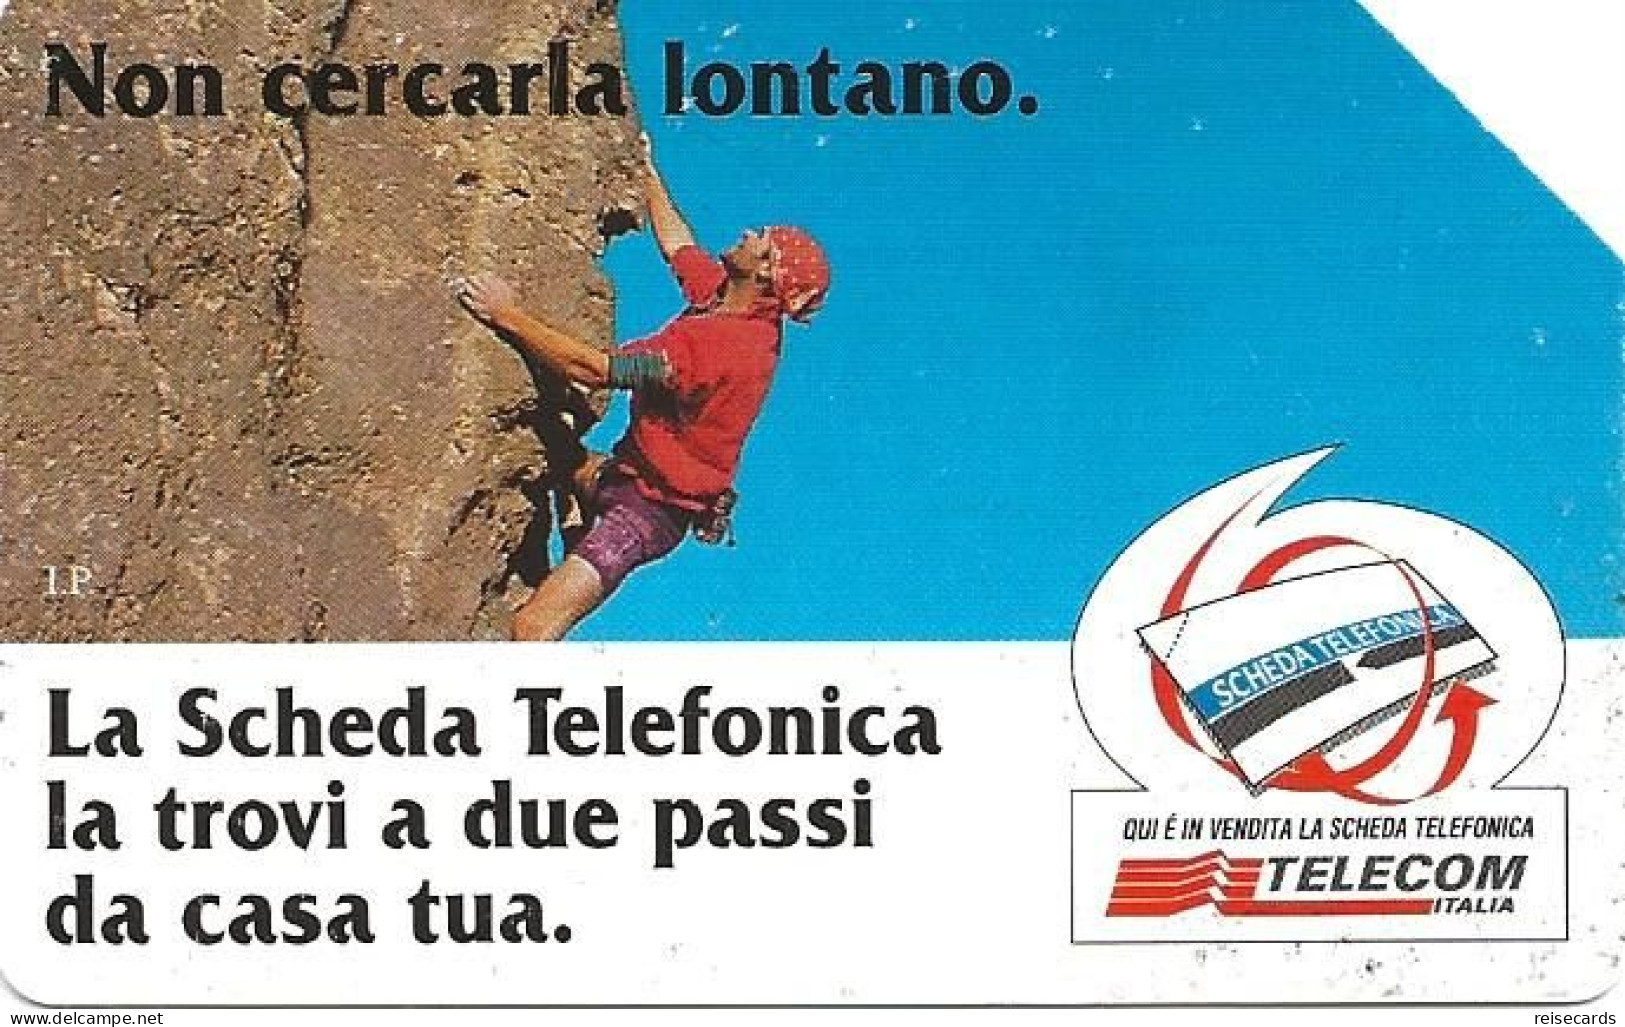 Italy: Telecom Italia - La Scheda Telefonica, Non Cercarla Lontano - Openbare Reclame